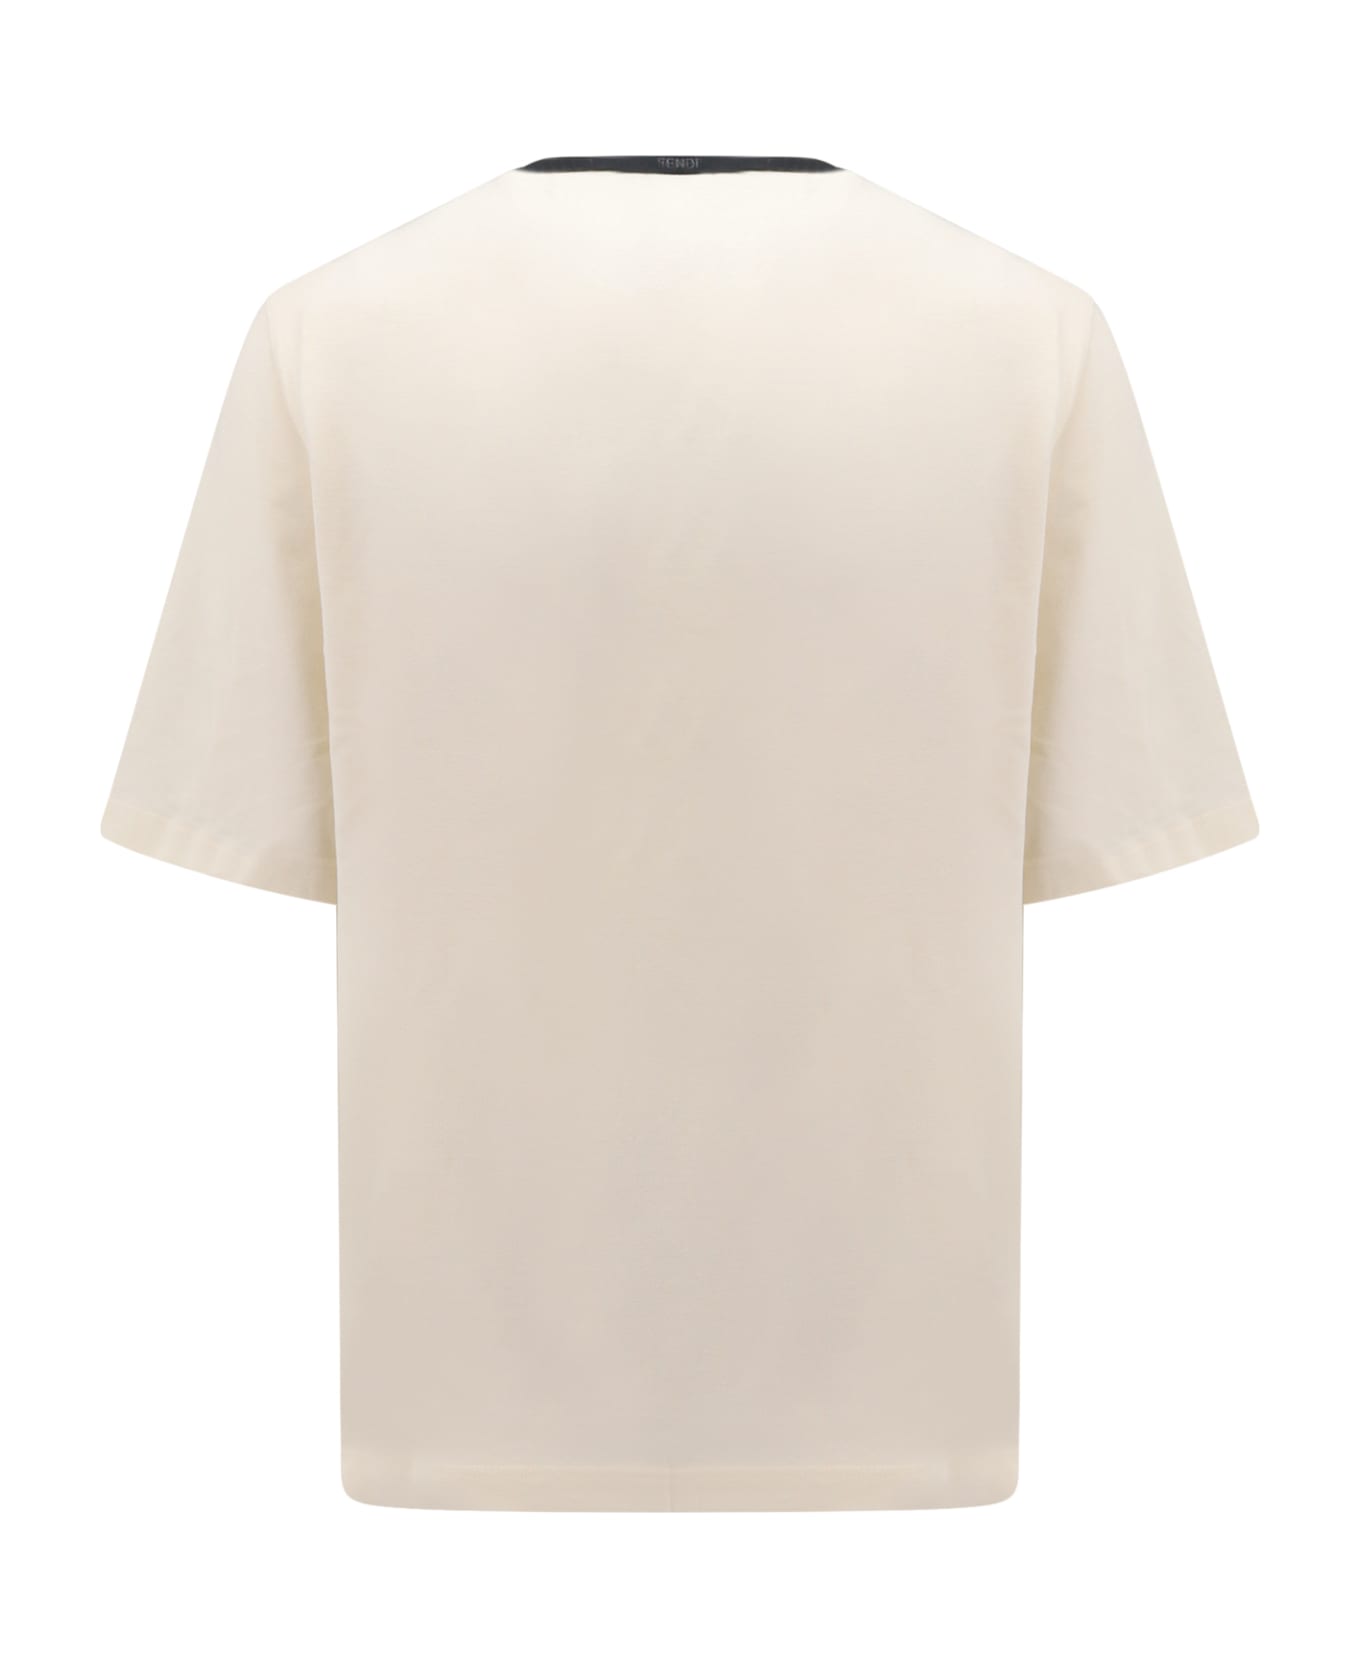 Fendi Naturale T-shirt - White シャツ